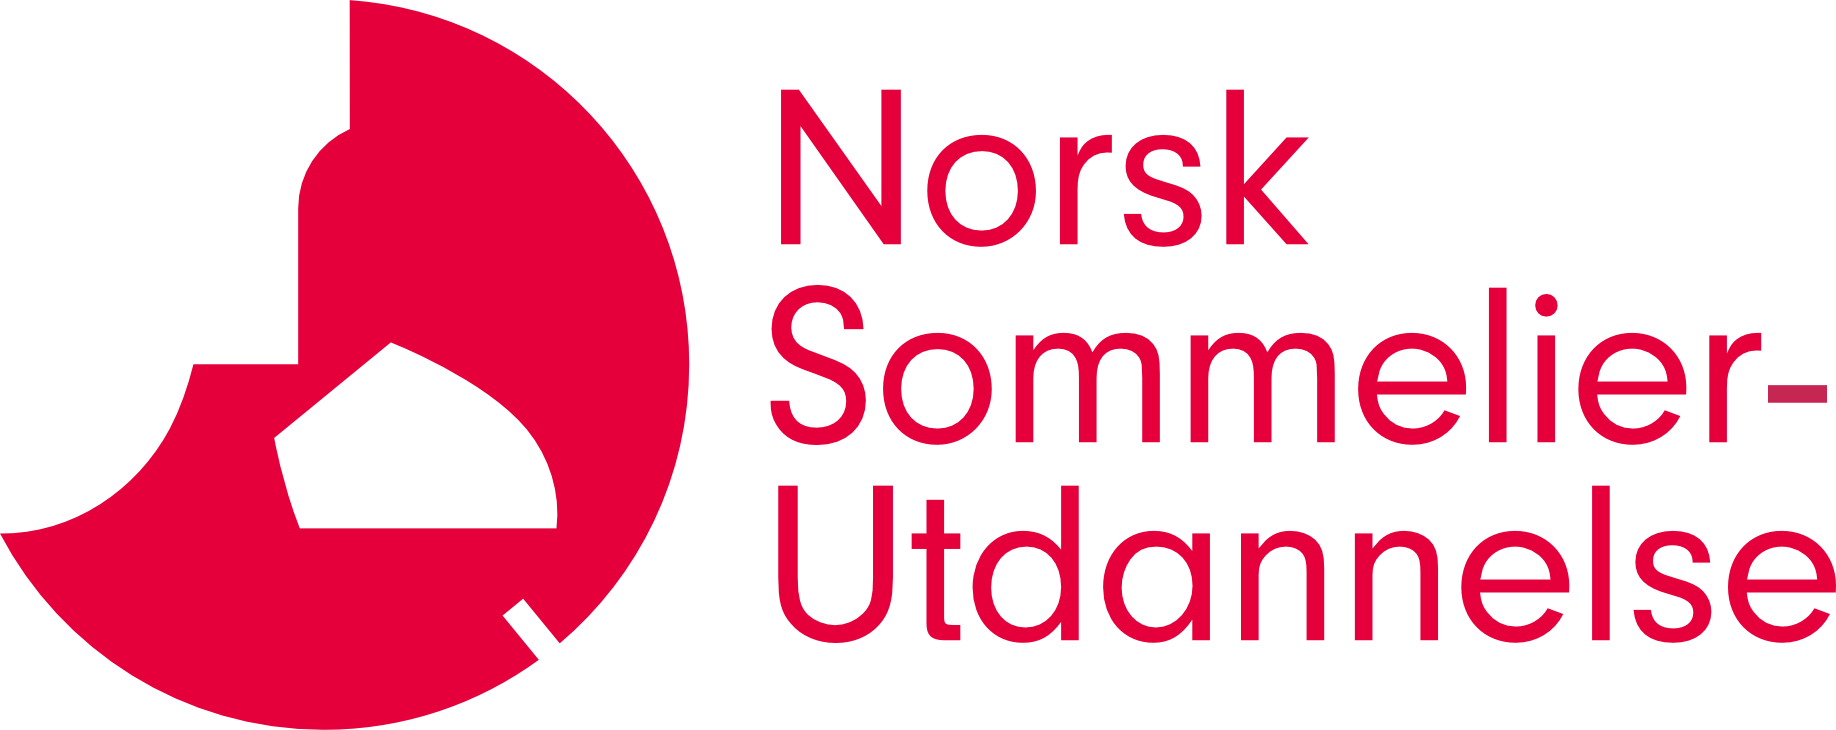 Norsk sommelierutdannelse